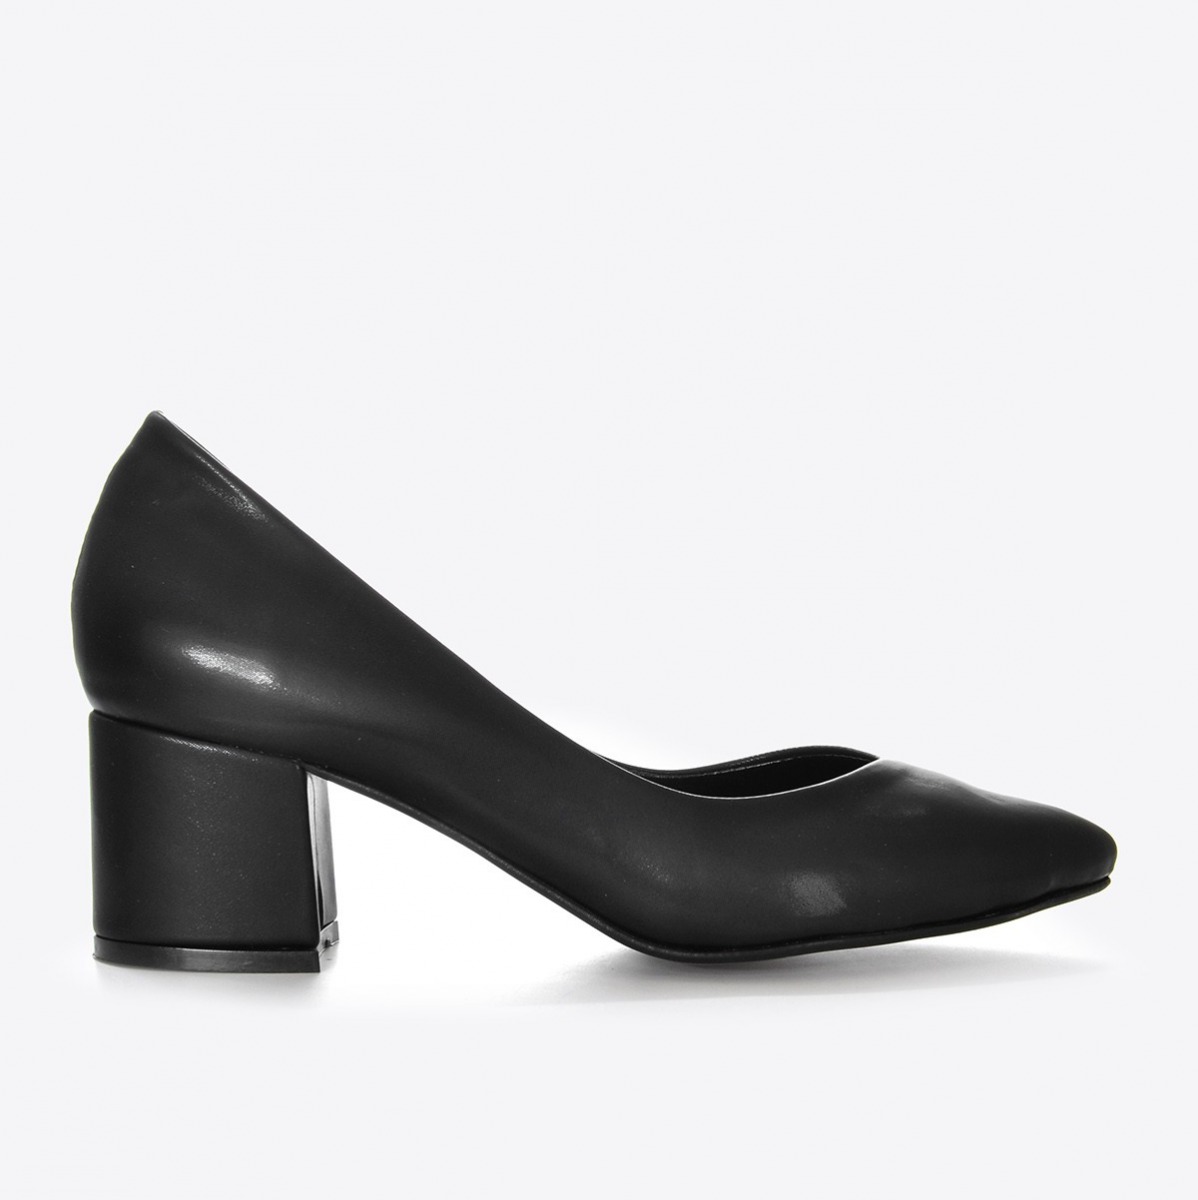 Flo Kadın Siyah Kumaş Klasik Topuklu Ayakkabı VZN21-040Y. 2